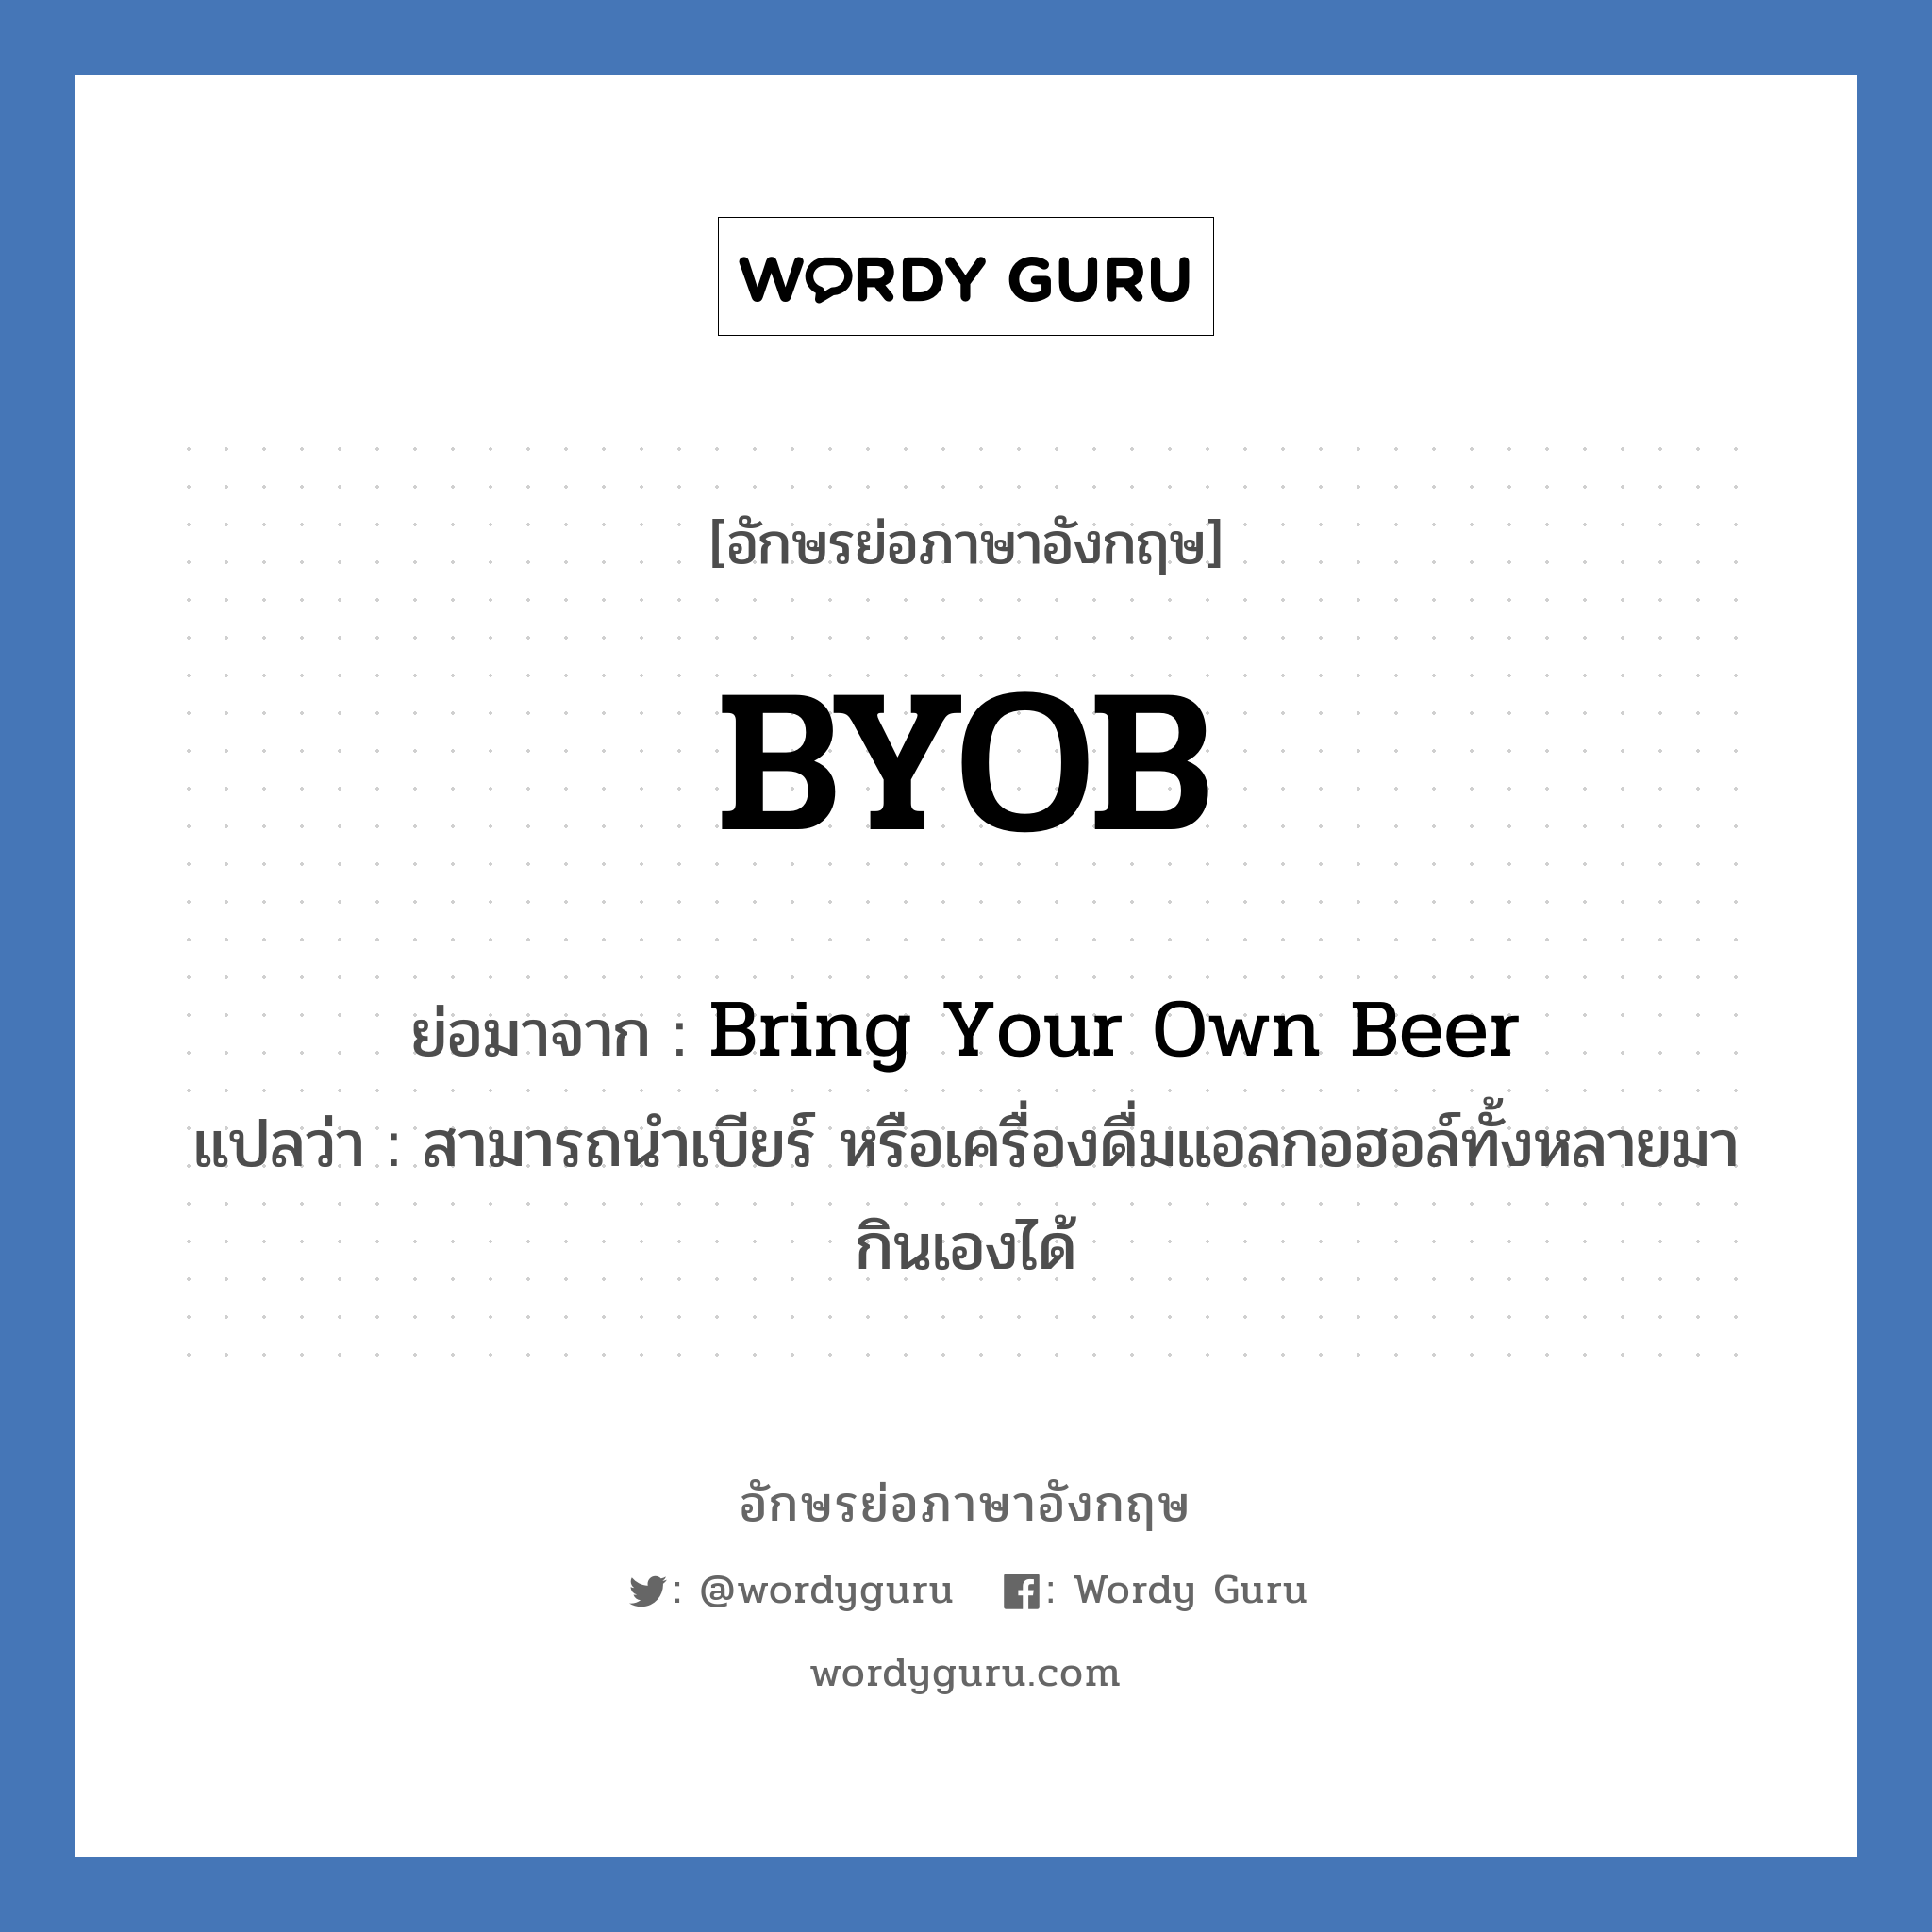 BYOB ย่อมาจาก? แปลว่า?, อักษรย่อภาษาอังกฤษ BYOB ย่อมาจาก Bring Your Own Beer แปลว่า สามารถนำเบียร์ หรือเครื่องดื่มแอลกอฮอล์ทั้งหลายมากินเองได้